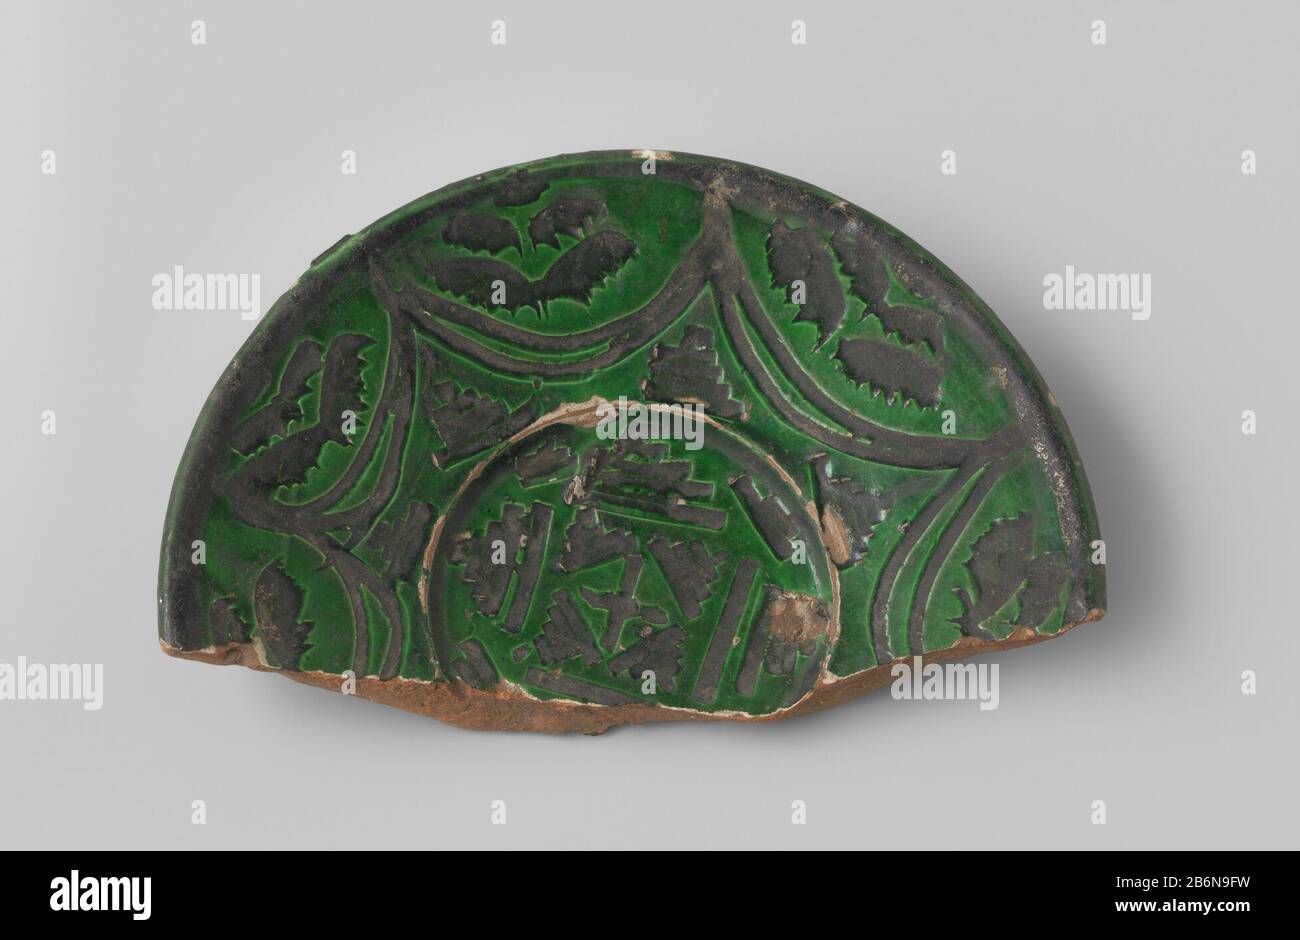 Fragment van een schotel met roodbakkende scherf, voorzien van groen glazuur, met ingekraste geometrisiche patronen in zwart glazuur Fragment van een schotel met roodbakkende scherf, voorzien van groen glazuur, met ingekraste geometrisen patronen in zwart 2-4 glazuf: BK-Typ: 50jämantur: Italië Objekt: Typ: Typ: 1200 - 1899 Material: Aardewerk Abmessungen: H 3,0 cm. × b 19,0 cm. × d 12,4 cm. Stockfoto